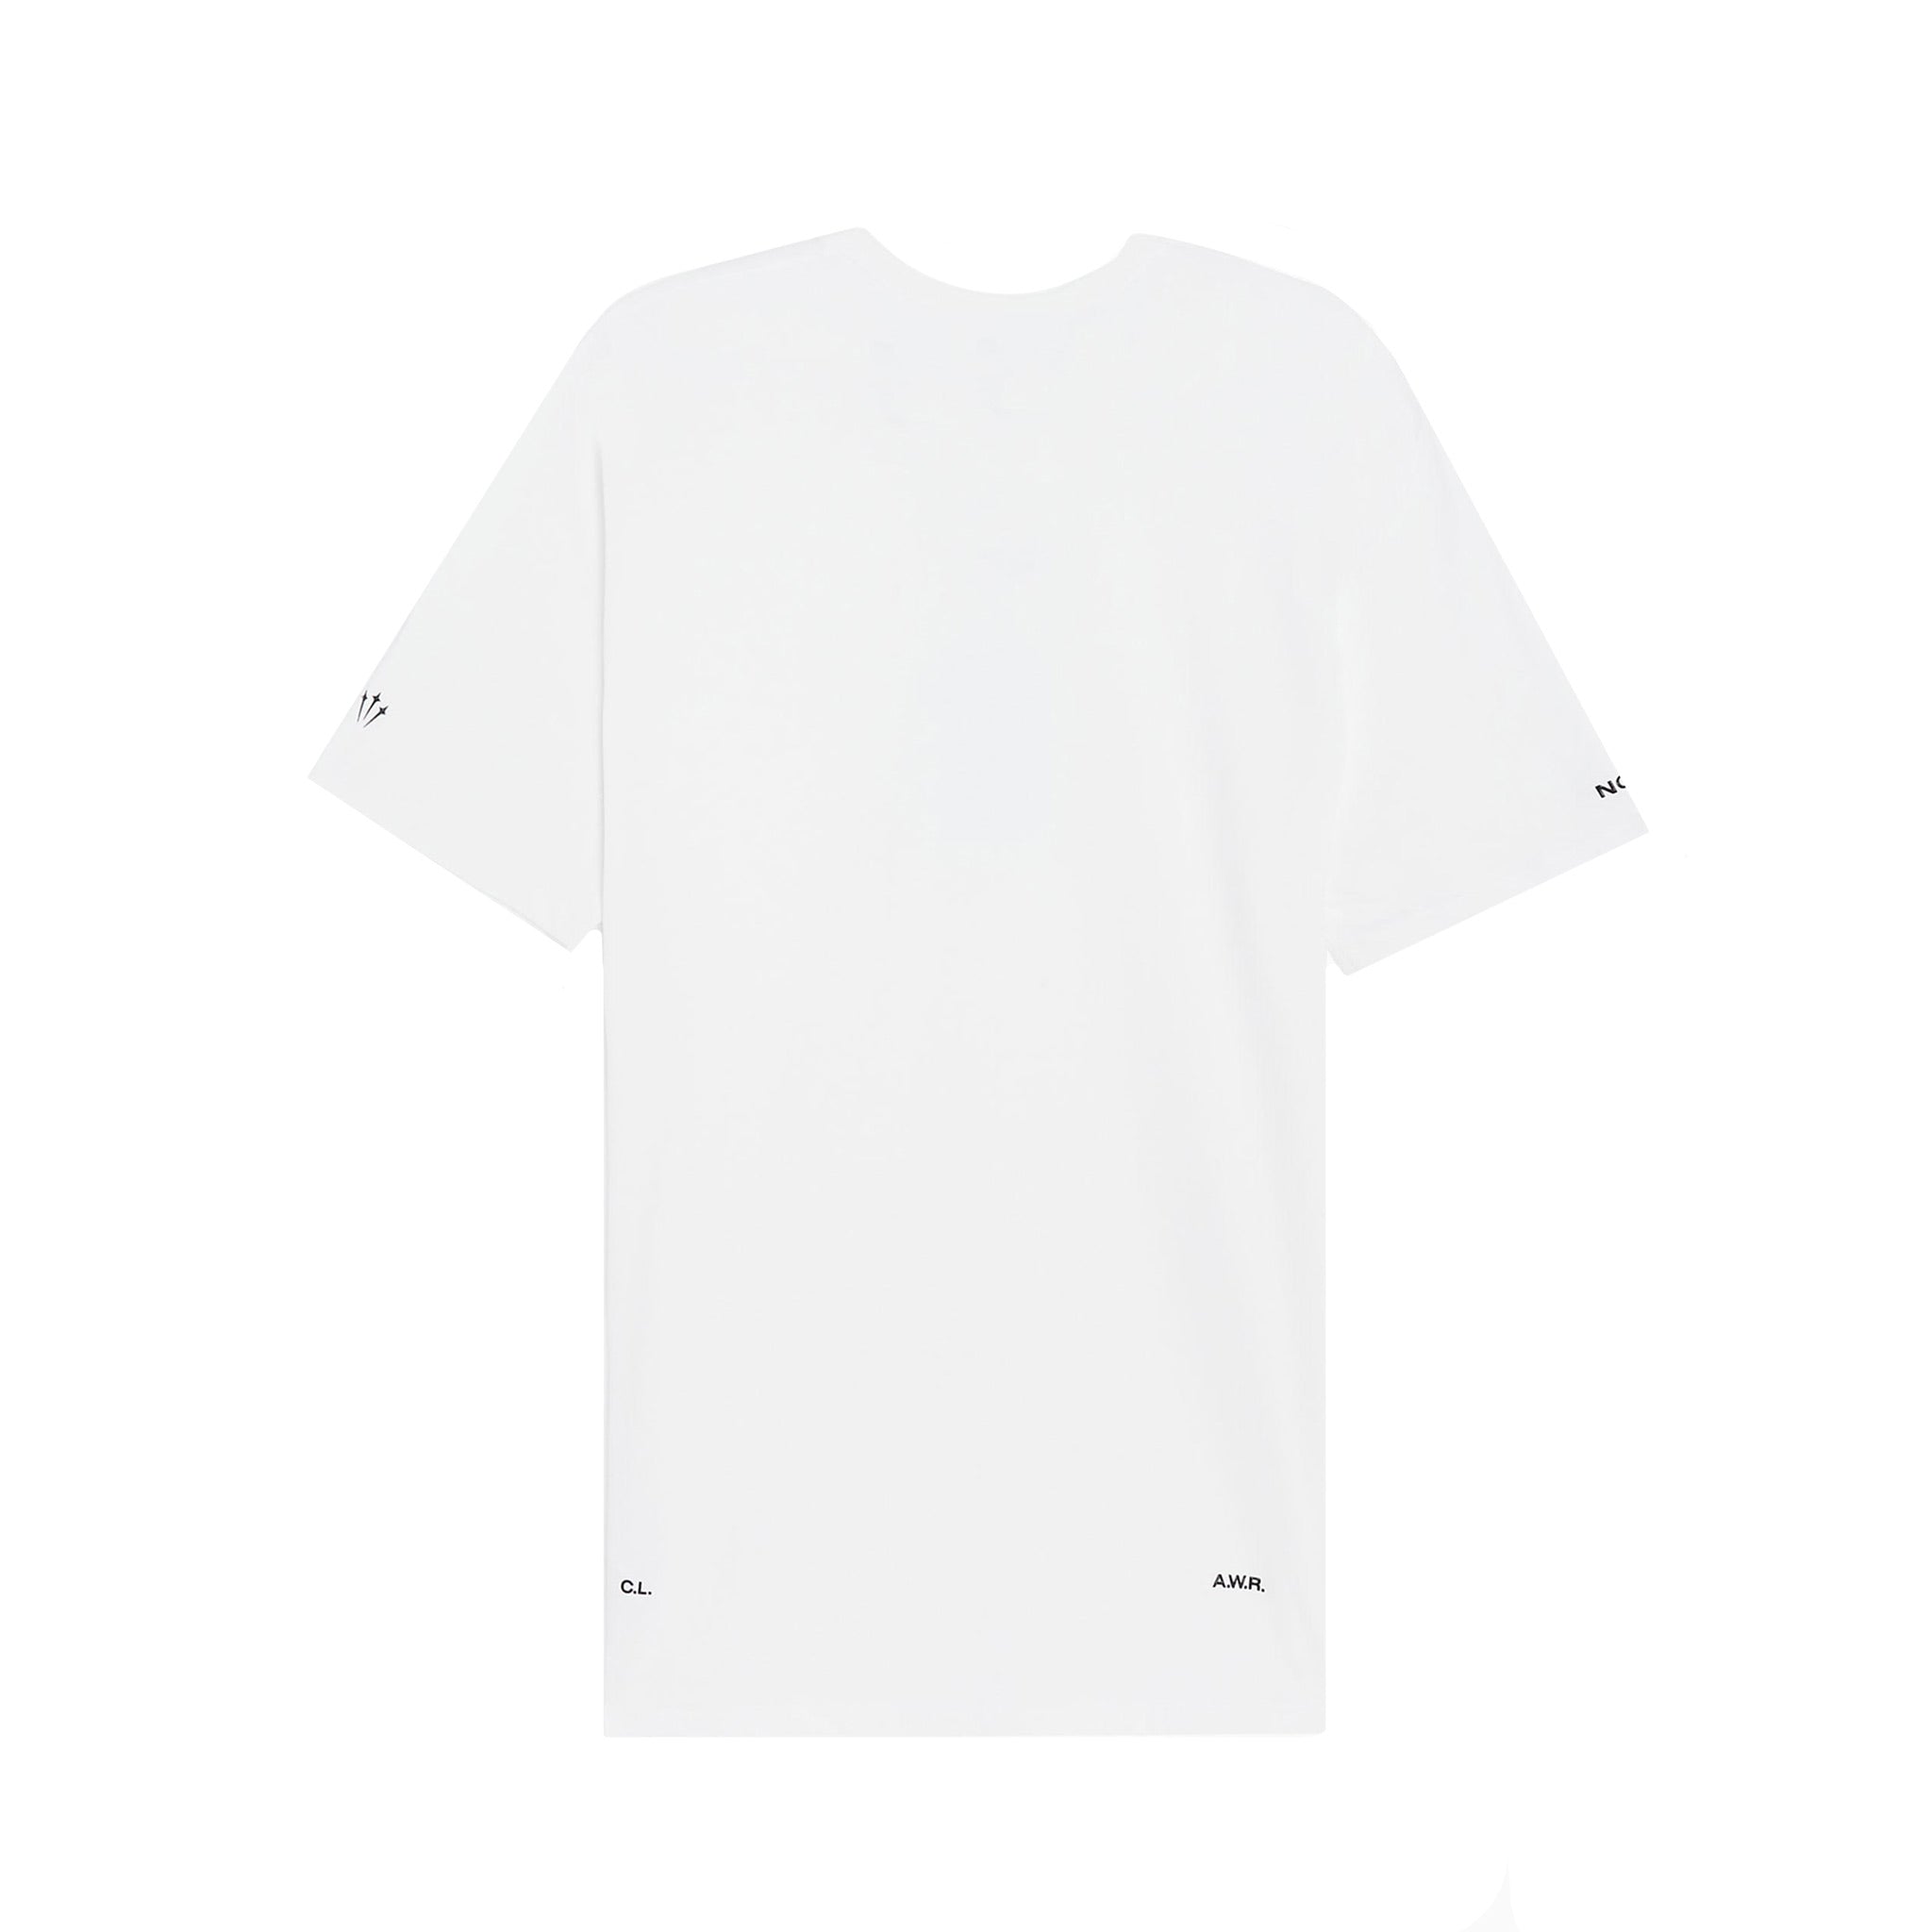 Nike x NOCTA II NRG Tee - White | Points Streetwear Store | Brisbane